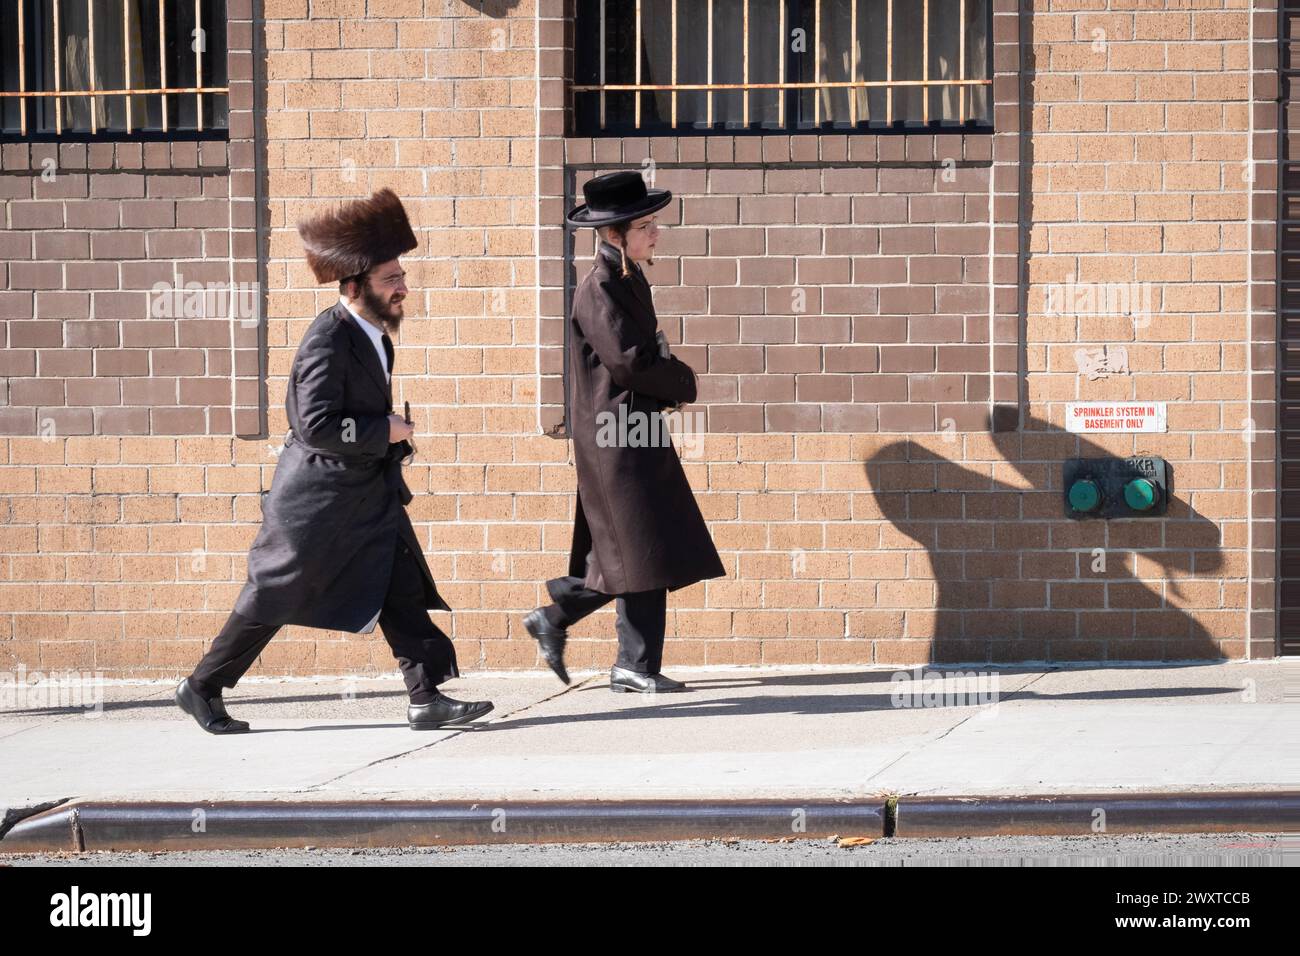 Auf Purim werfen zwei chassidische Männer einen riesigen Schatten auf dem Weg zu den Morgengottesdiensten. An der Wythe Avenue in Williamsburg, Brooklyn, New York. Stockfoto